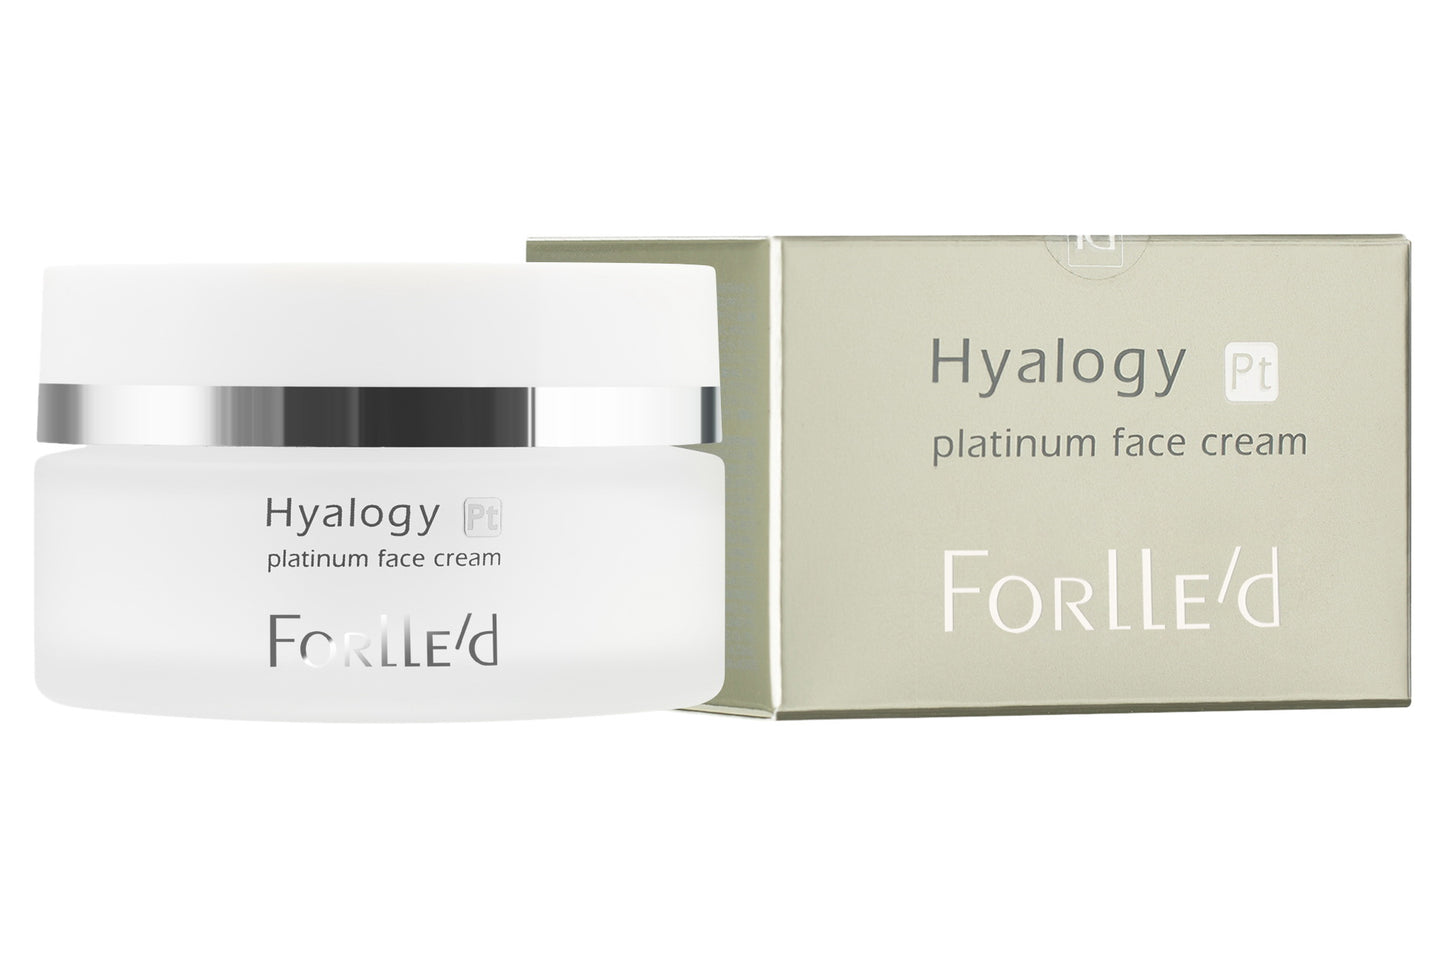 Forlle'd Platinum Face Cream 50 ml